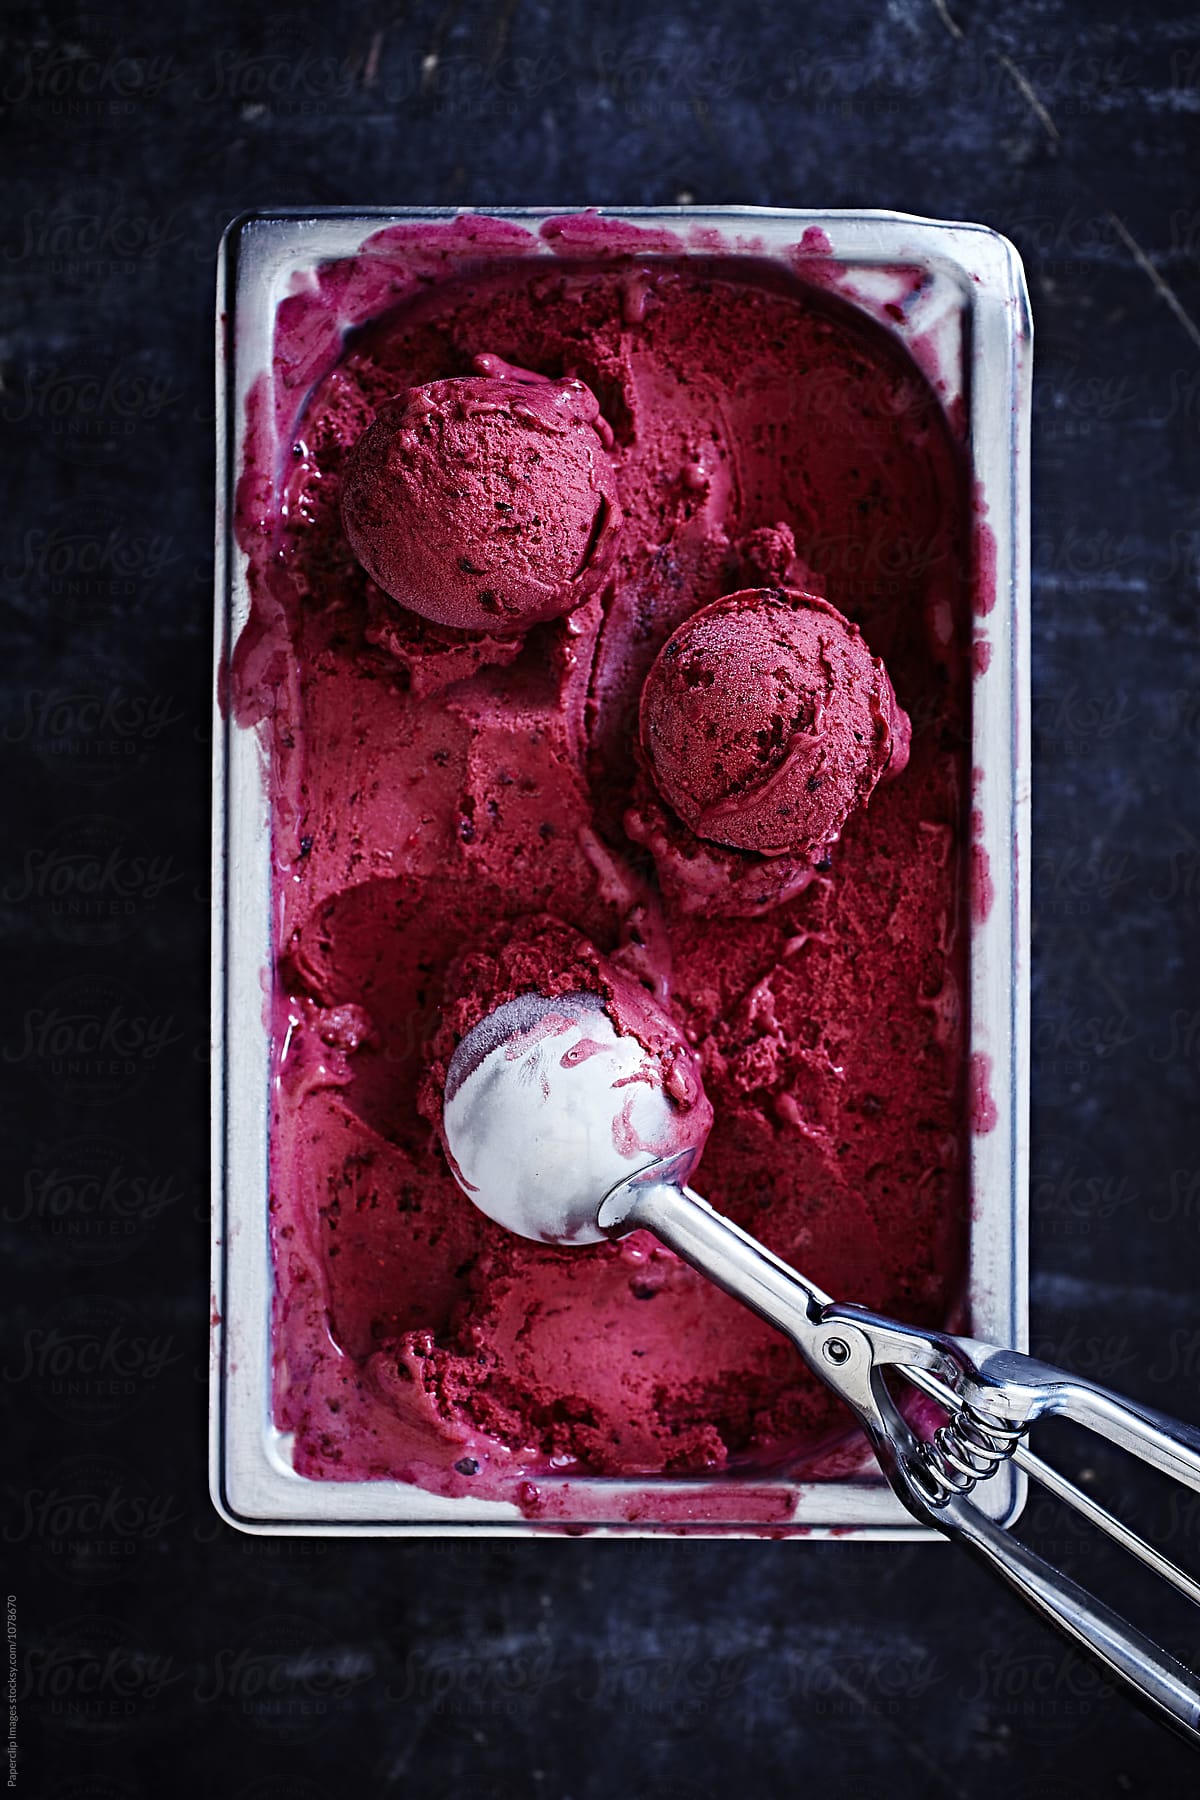 Blueberry ice cream with scoop